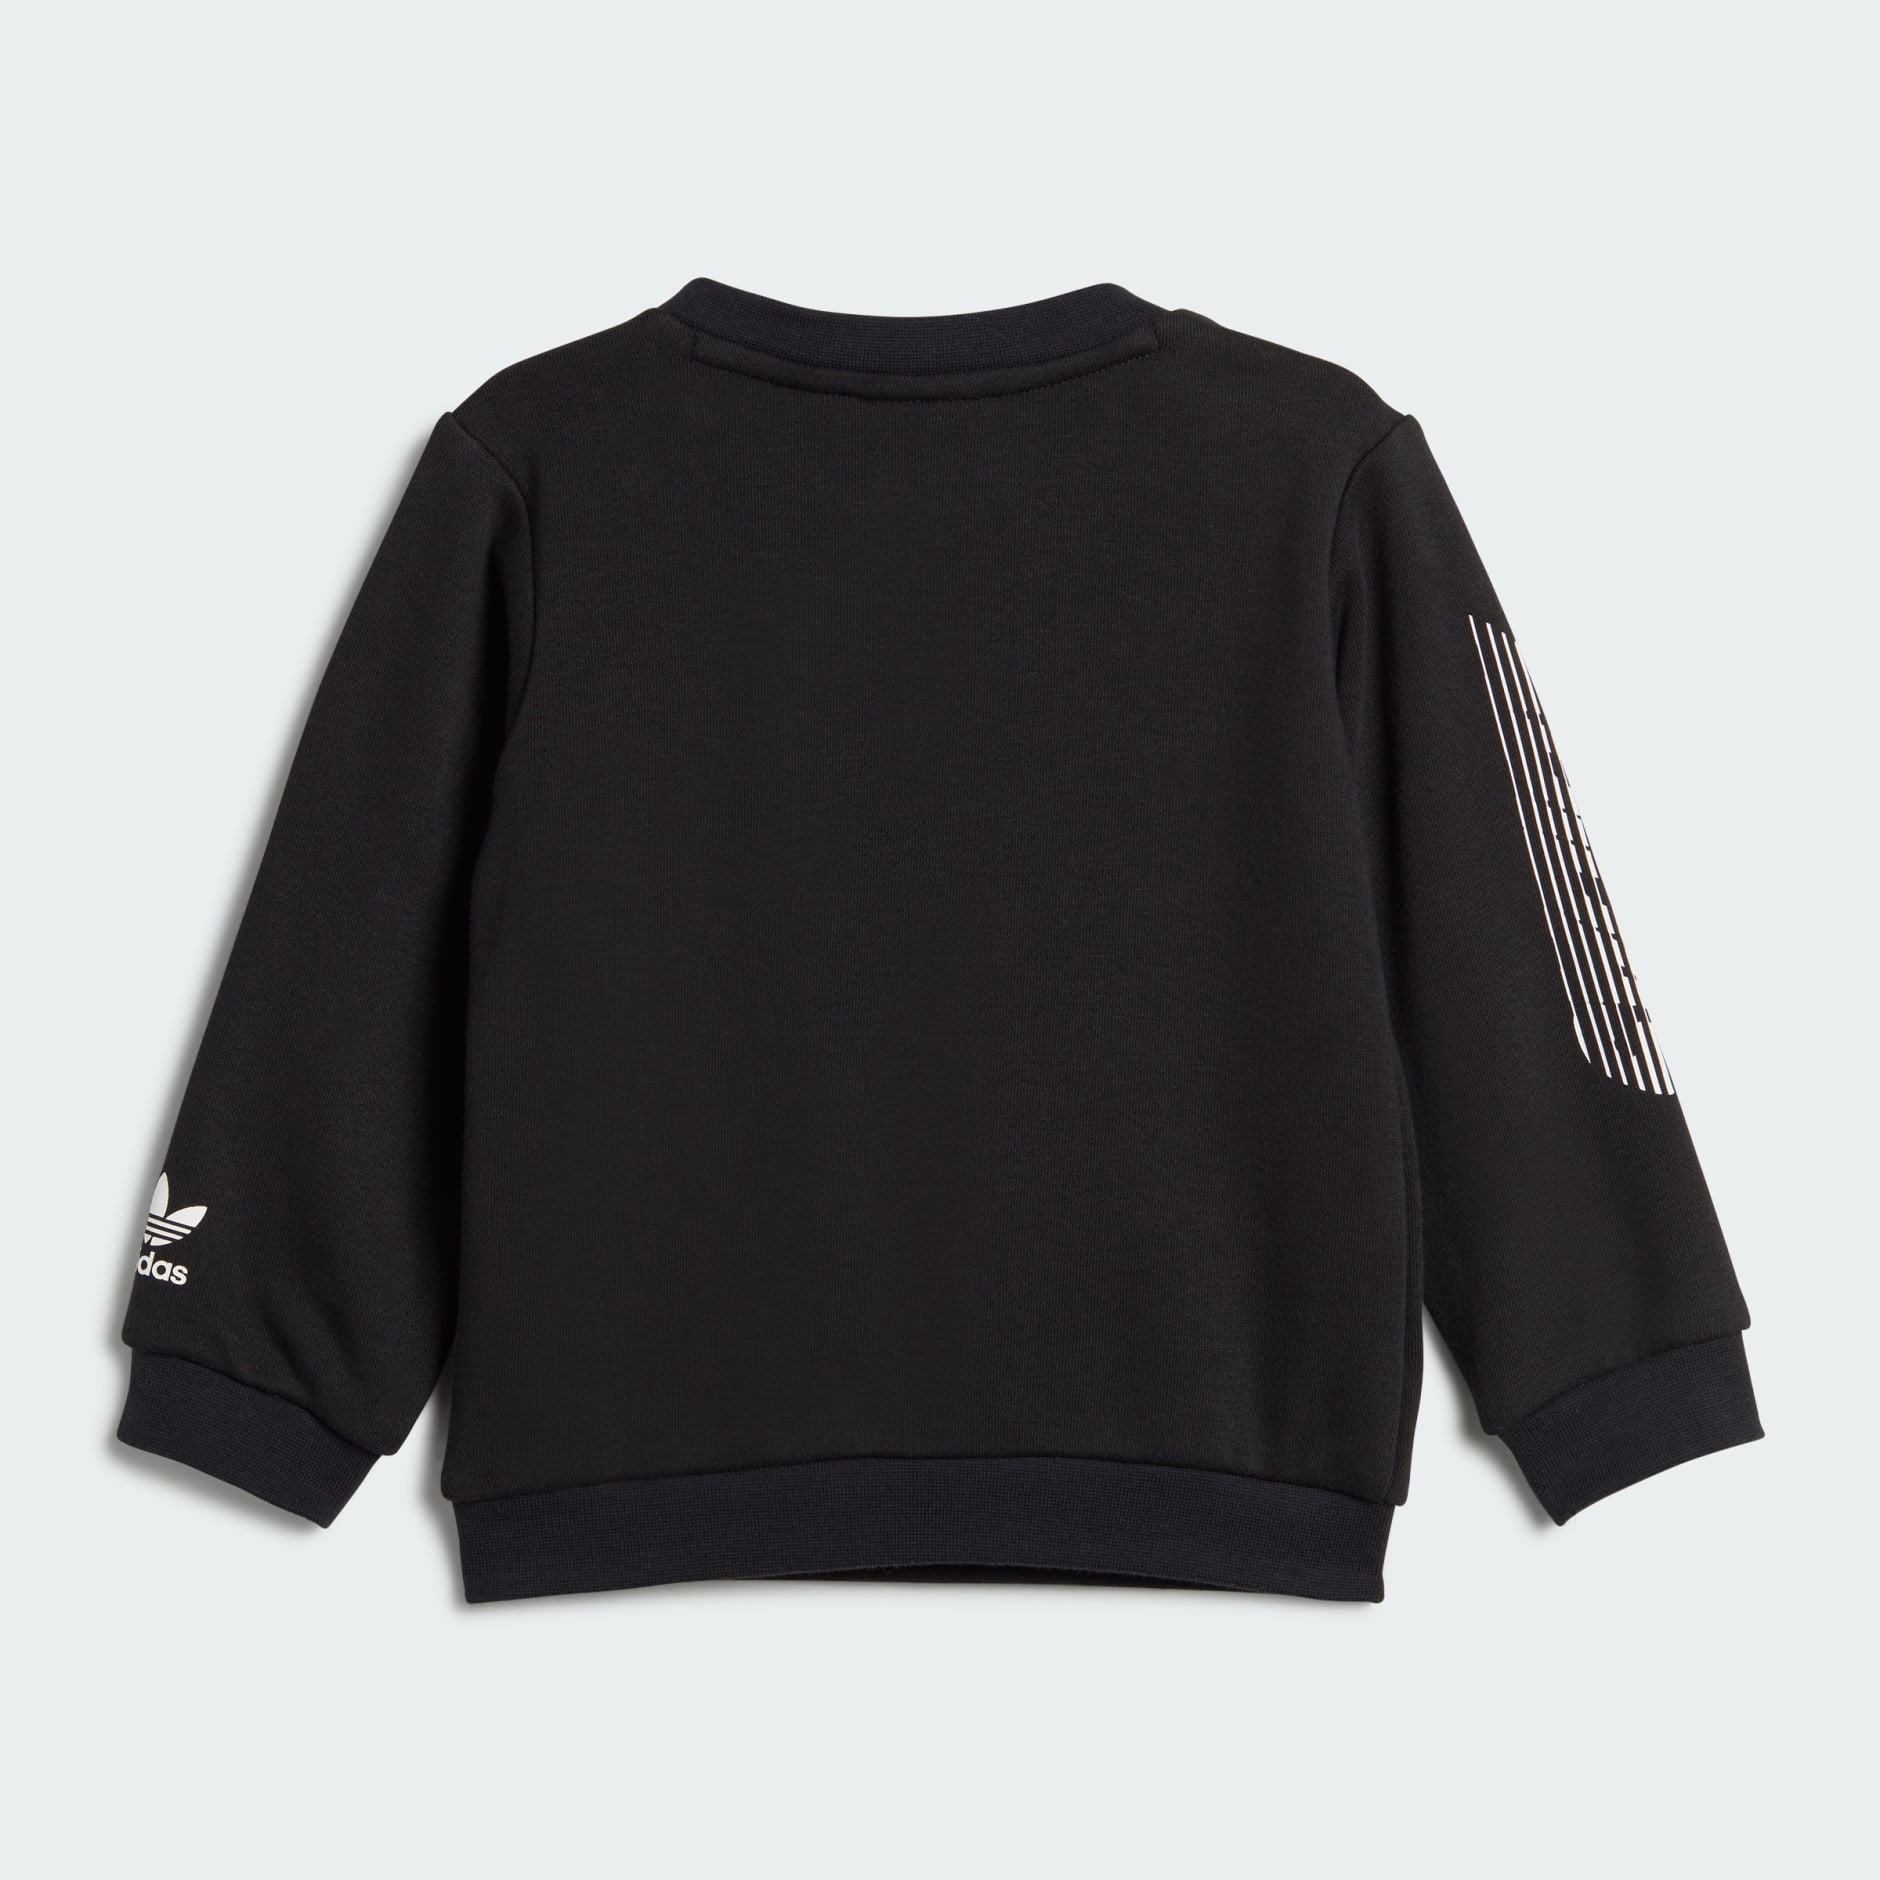 adidas Originals sweatshirt Adicolor women's black color buy on PRM